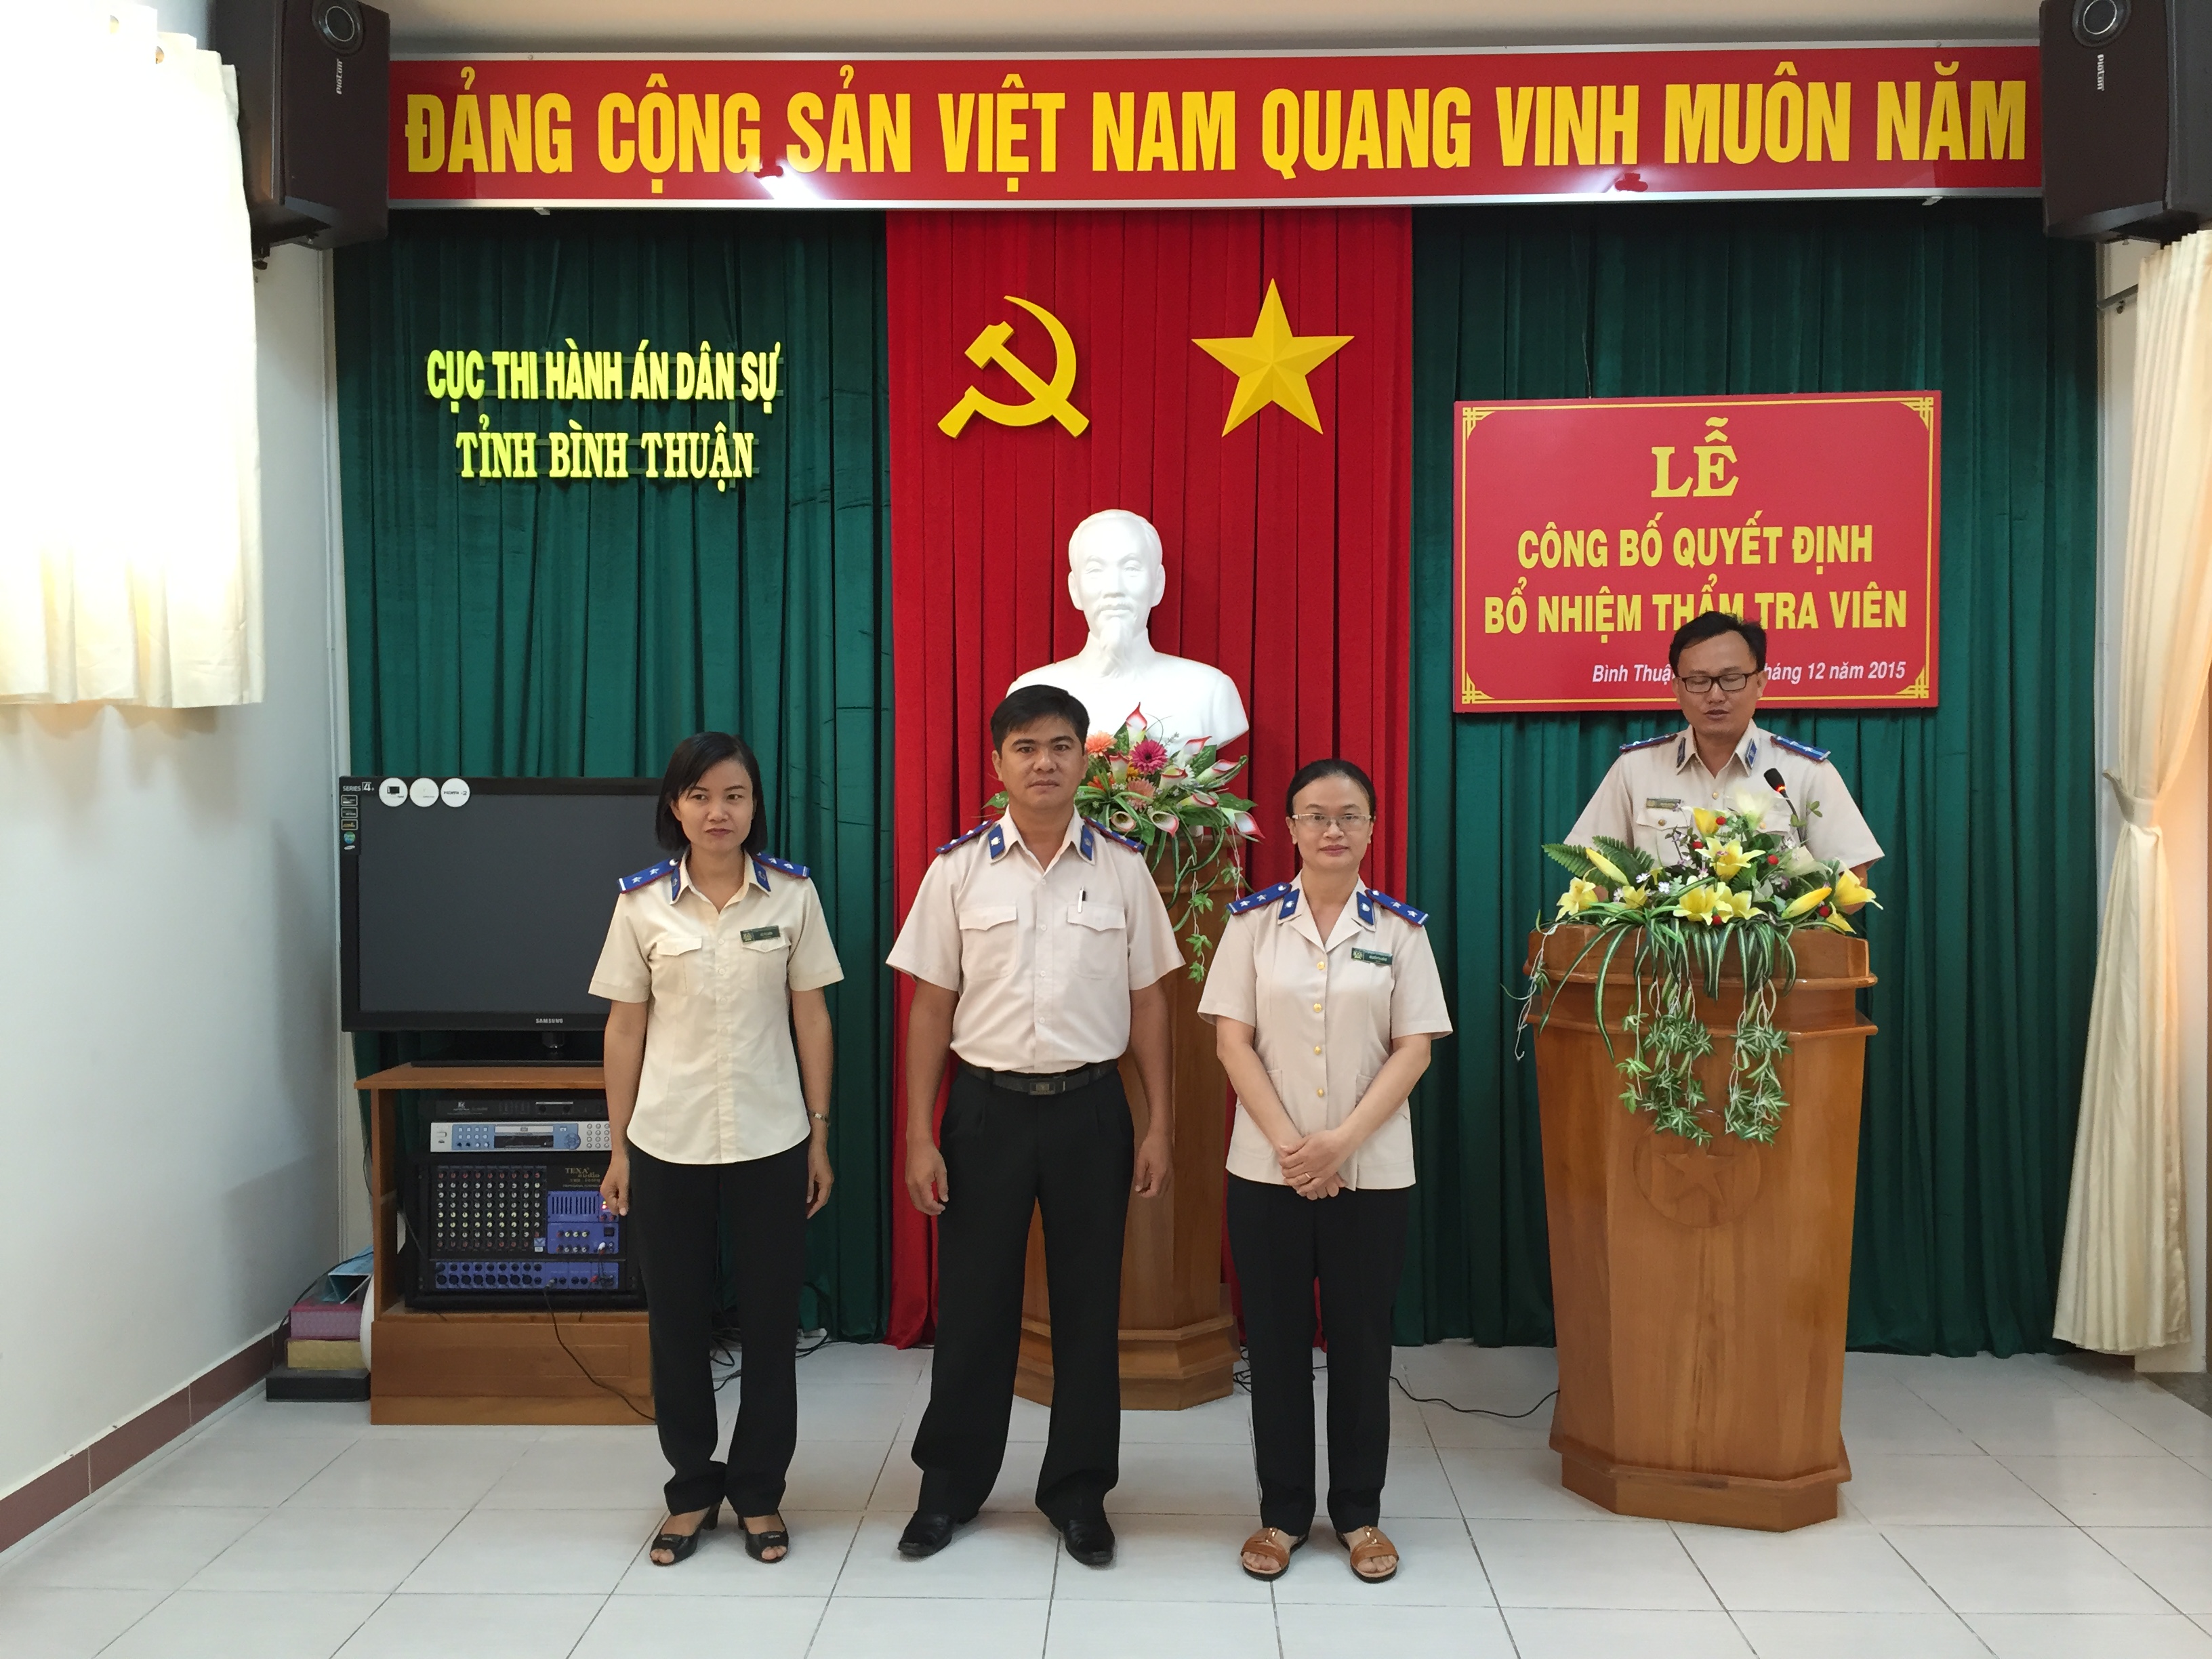 Lễ công bố Quyết định bổ nhiệm Thẩm tra viên Cục THADS tỉnh Bình Thuận